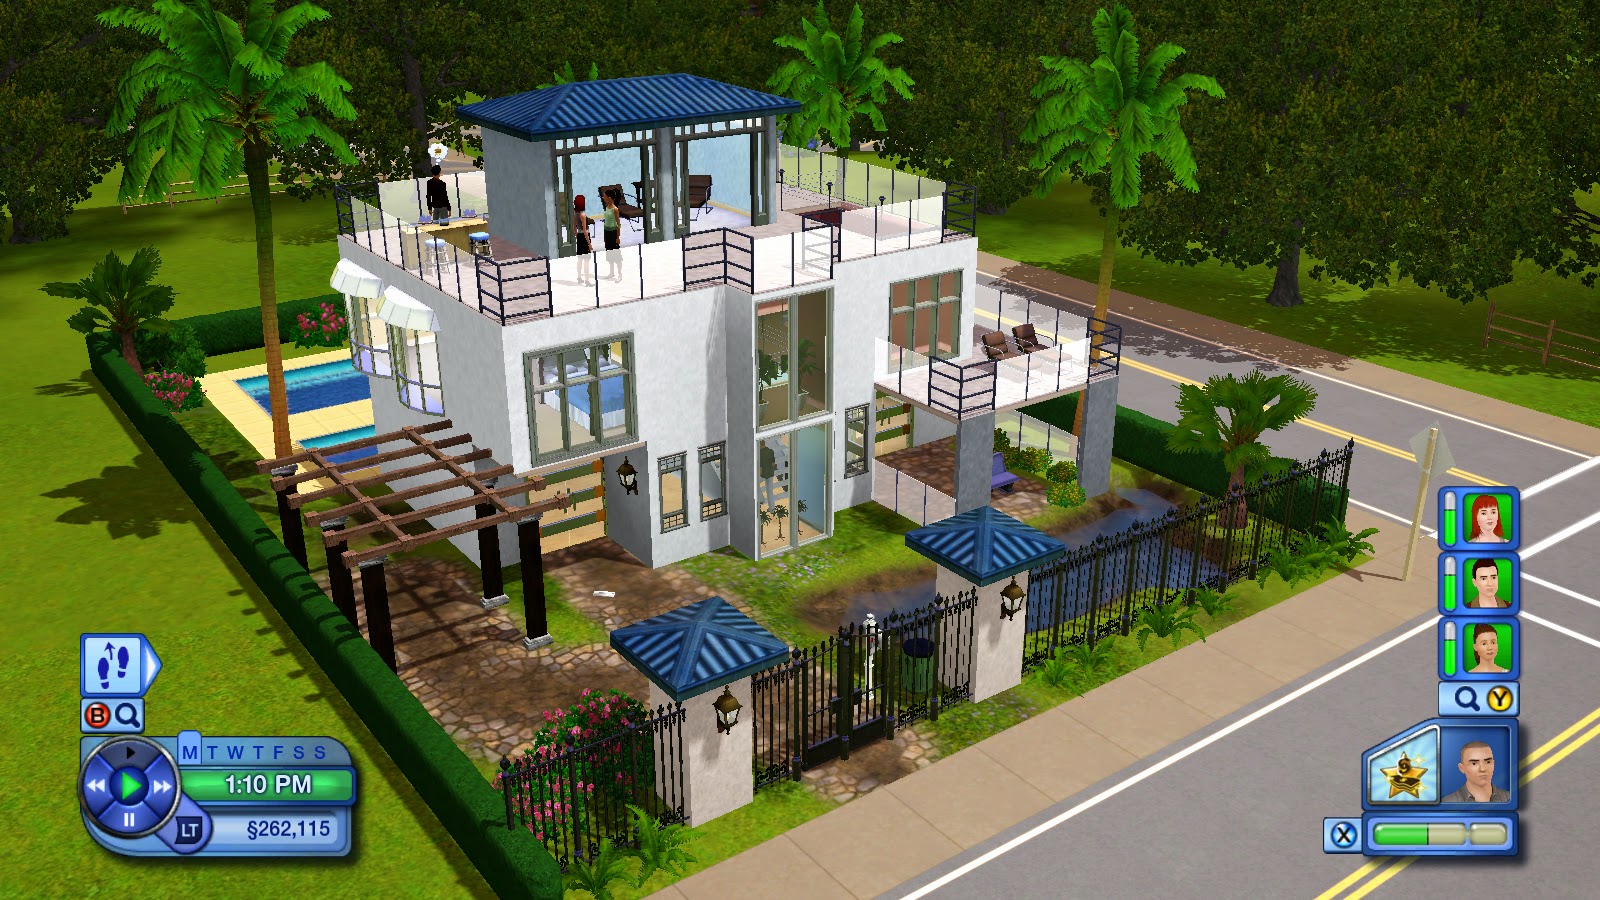 Desain Rumah The Sims 3 Pc - Ceritanya 39 desain rumah the sims 3 